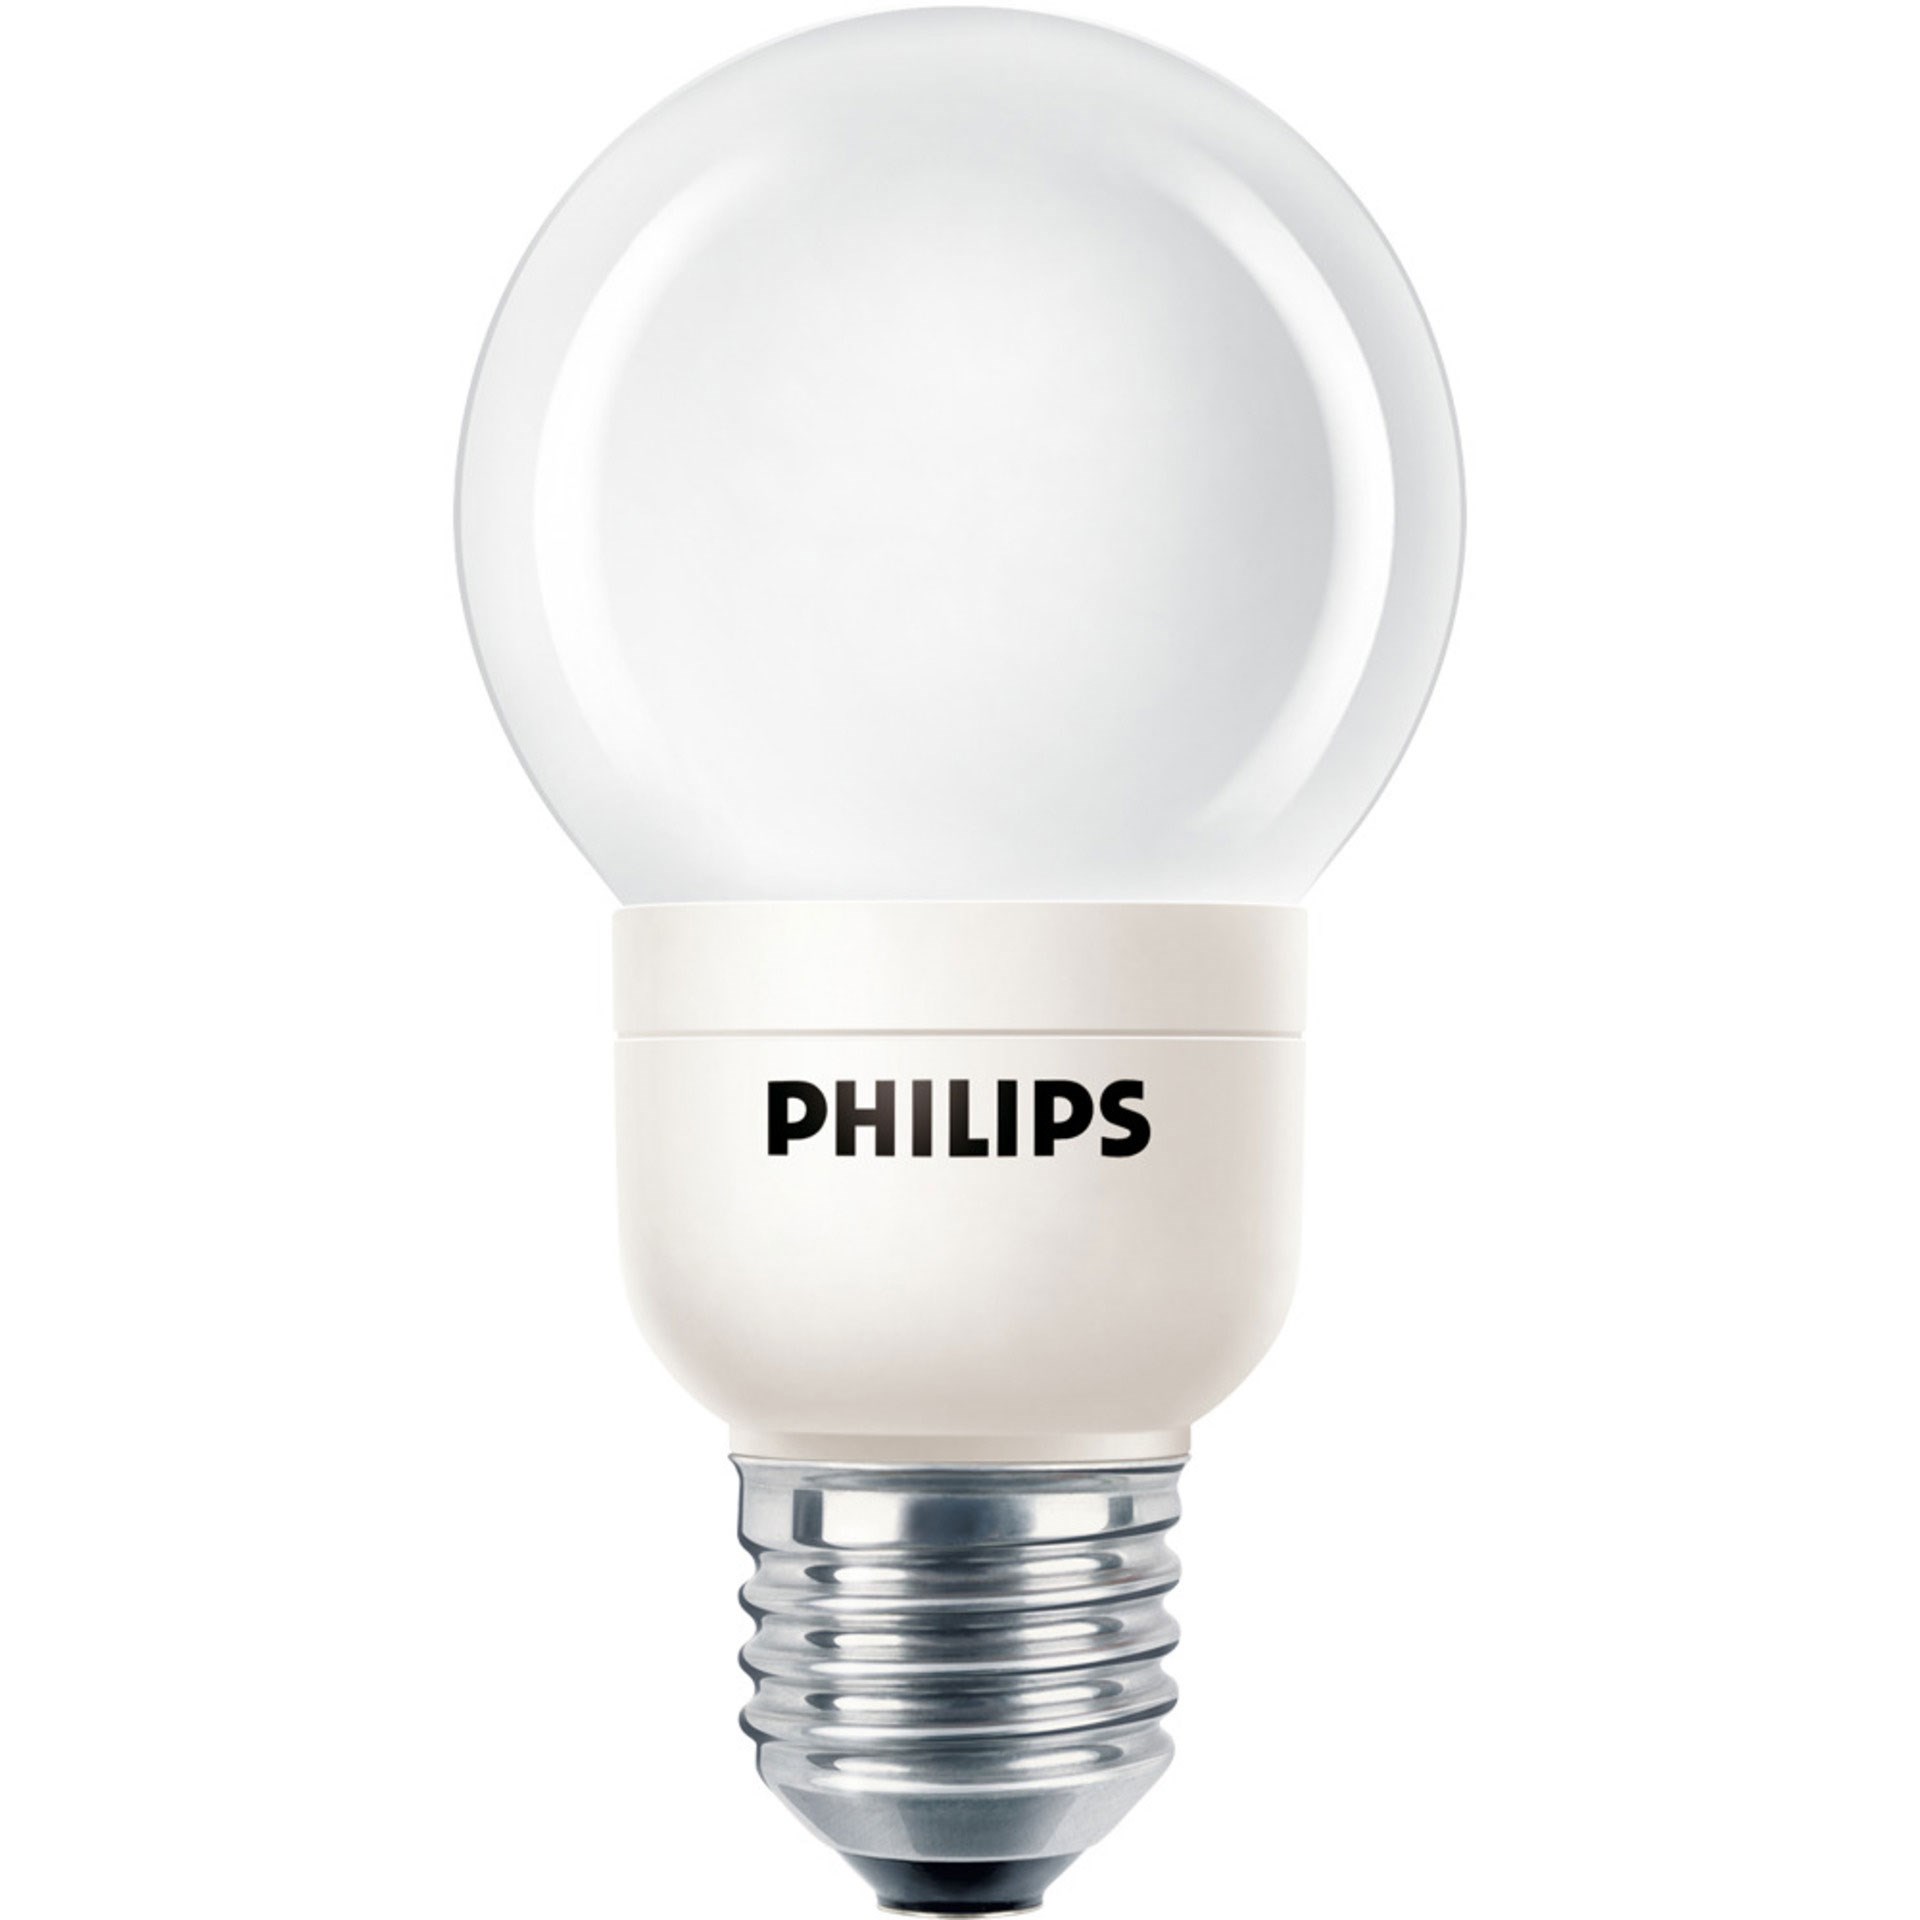 Bild von Philips Deco LED-Lampe 1 W (RGB 1,5 W)/ E27 / Kaltweiß / RGB Farbwechsel